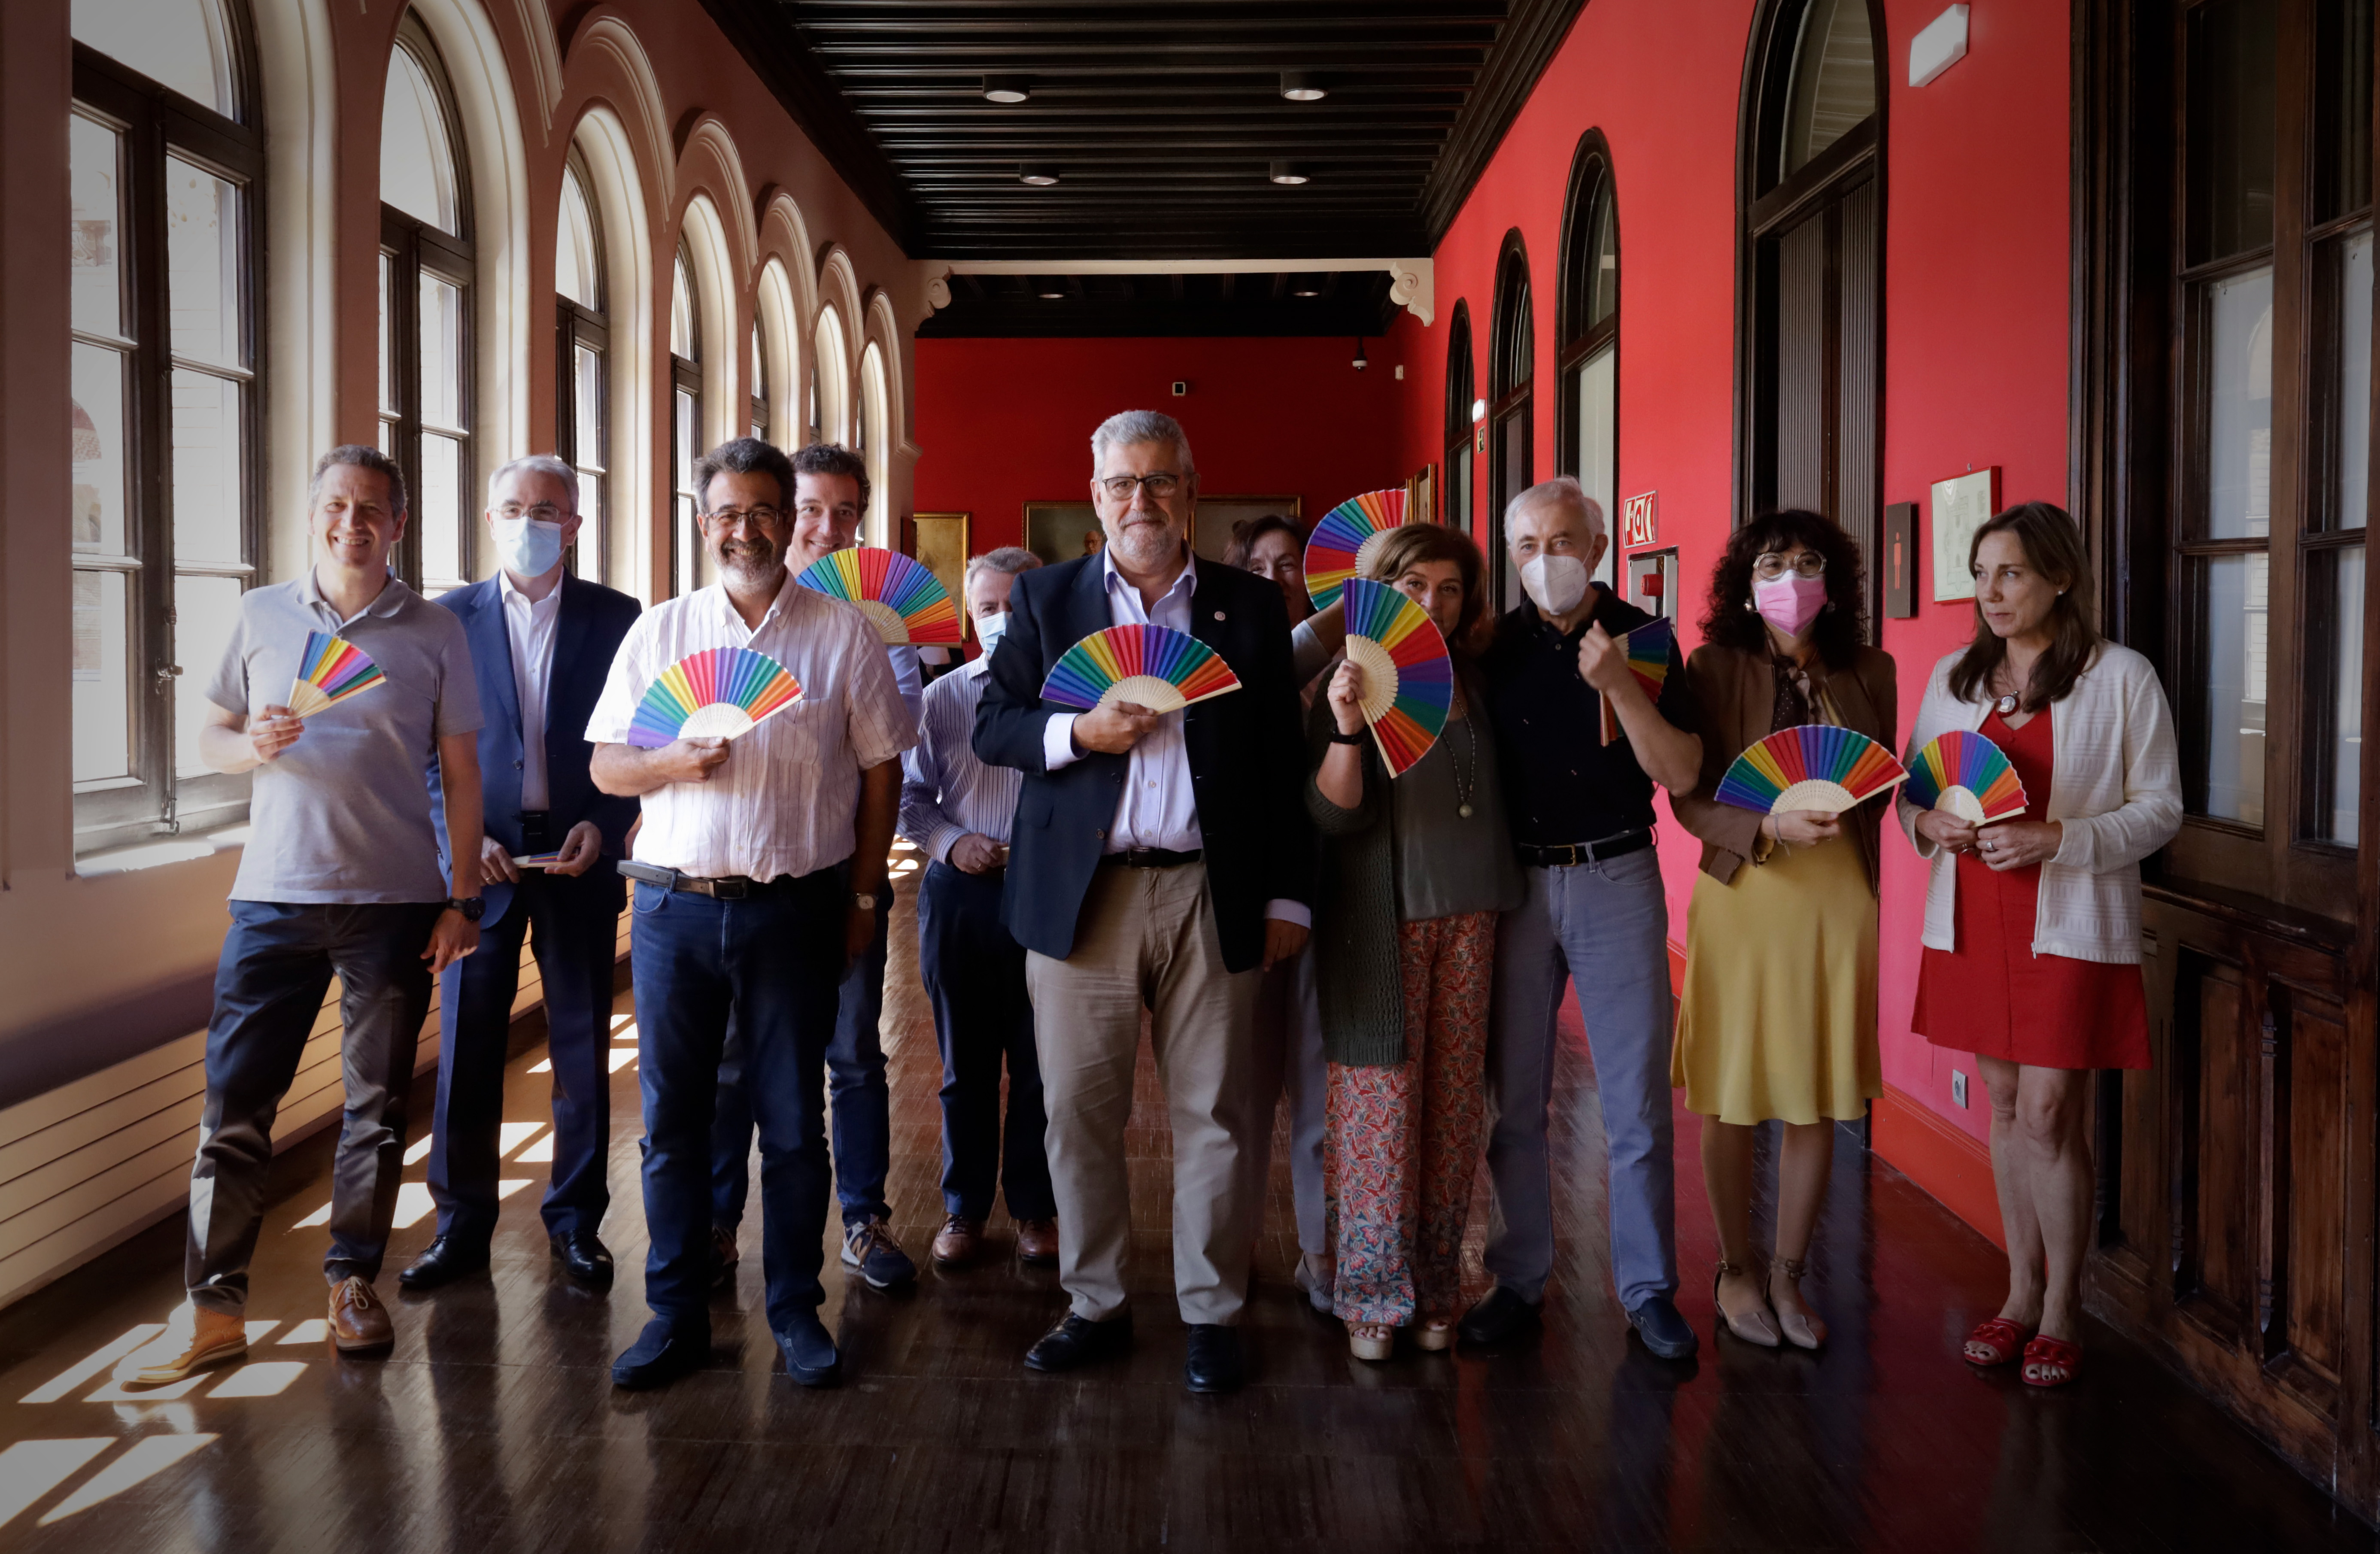 Foto del consejo de gobierno de la Universidad de Zaragoza portando abanicos con los colores representativos de la bandera arcoiris LGBT+ en el pasillo del Paranifo